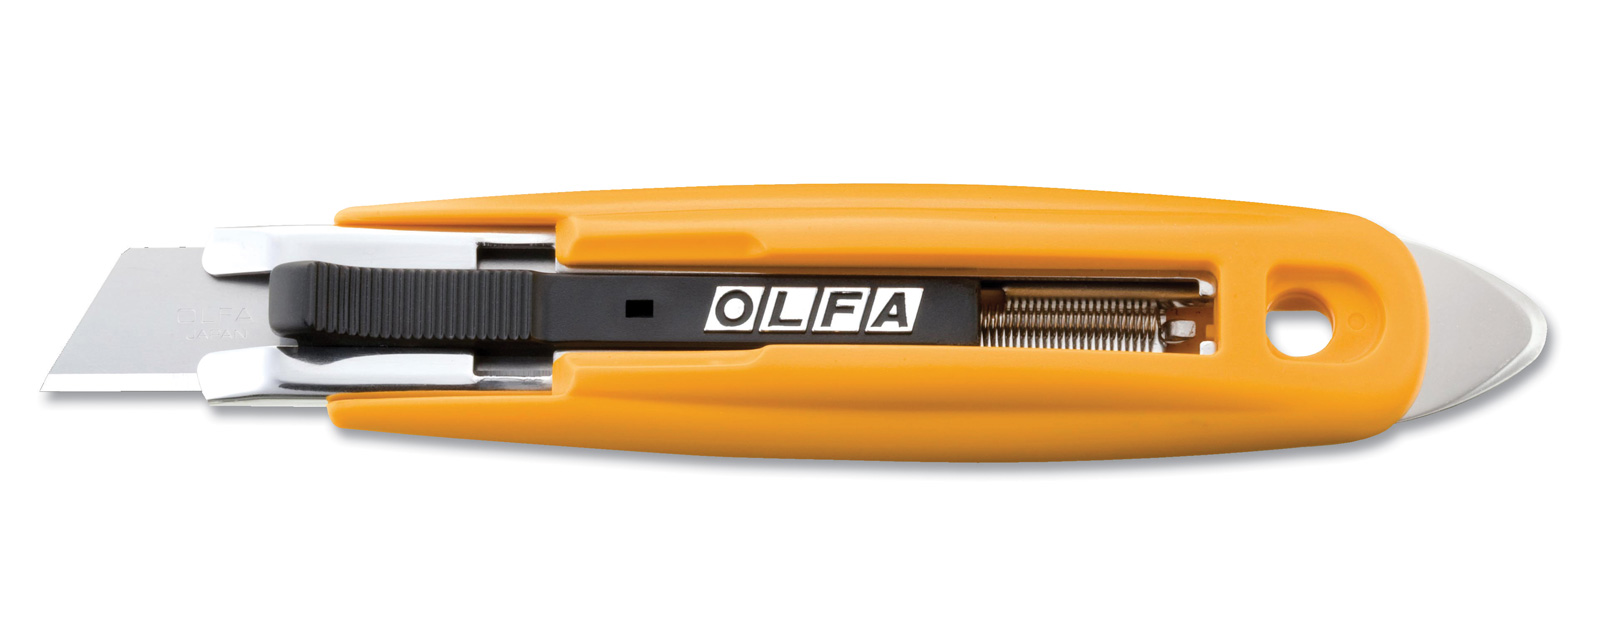 OLFA-SK-9-Sicherheitsmesser-CURT-tools_1600